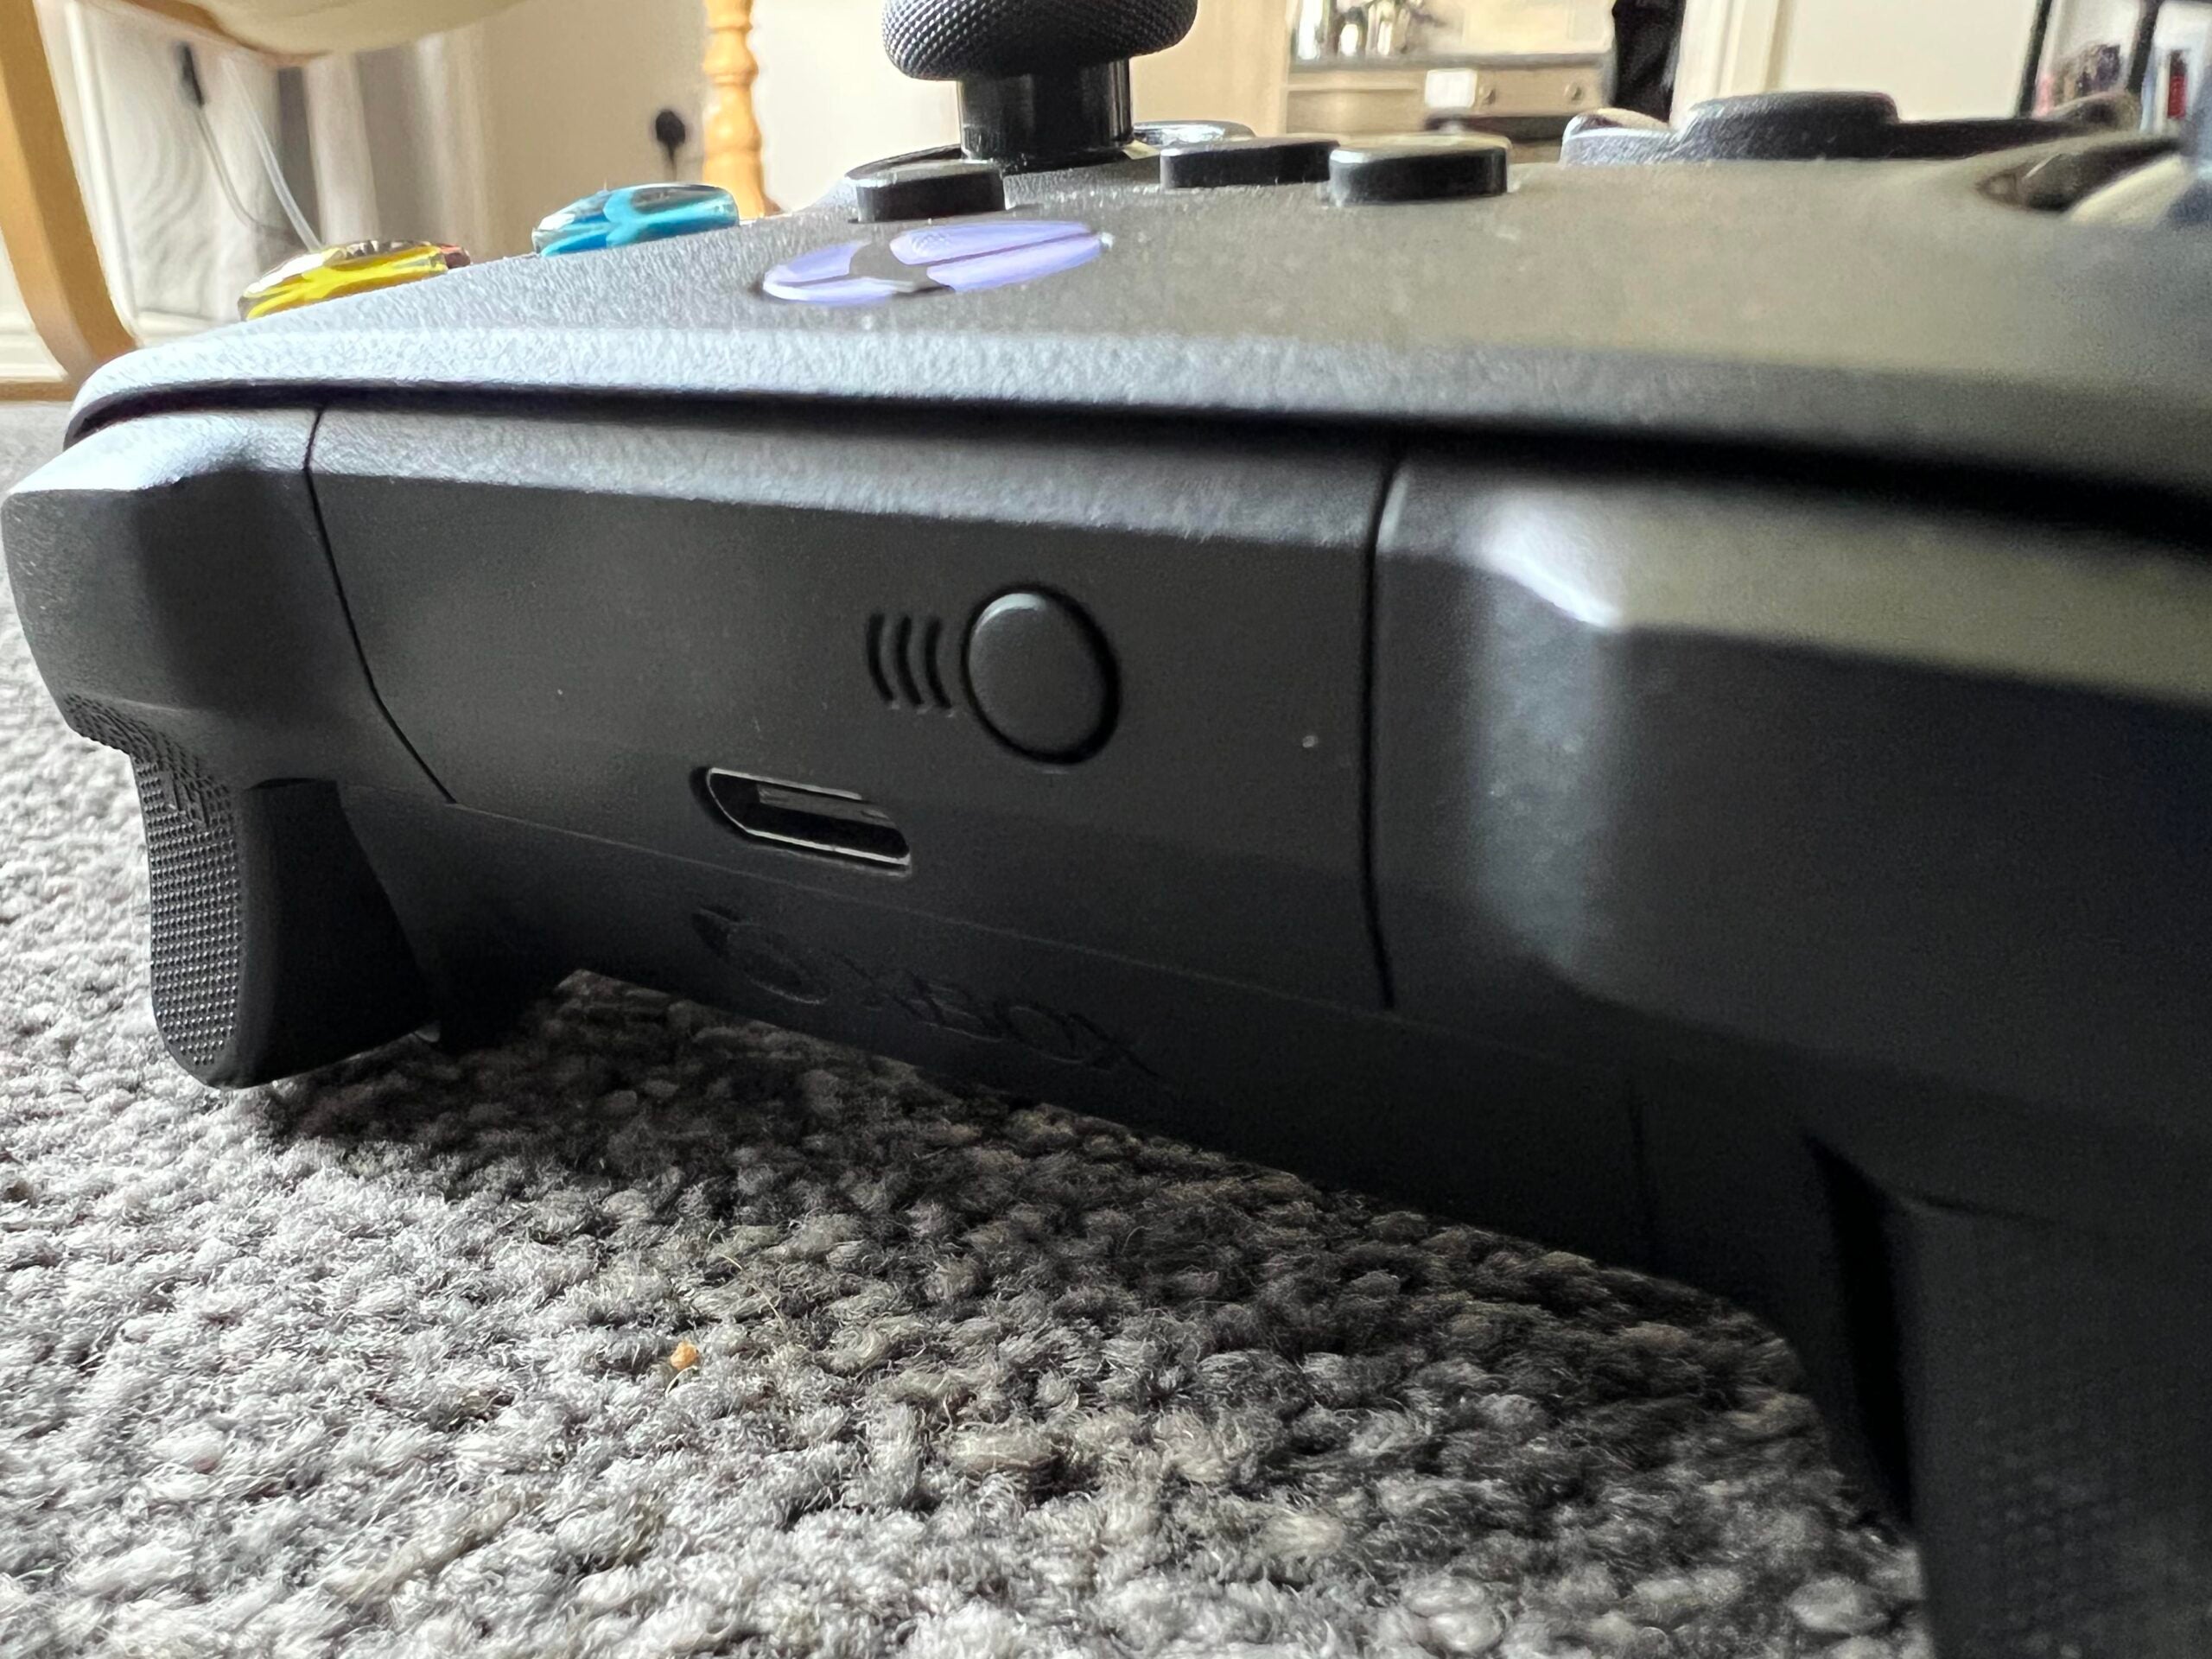 Xbox controller pairing button